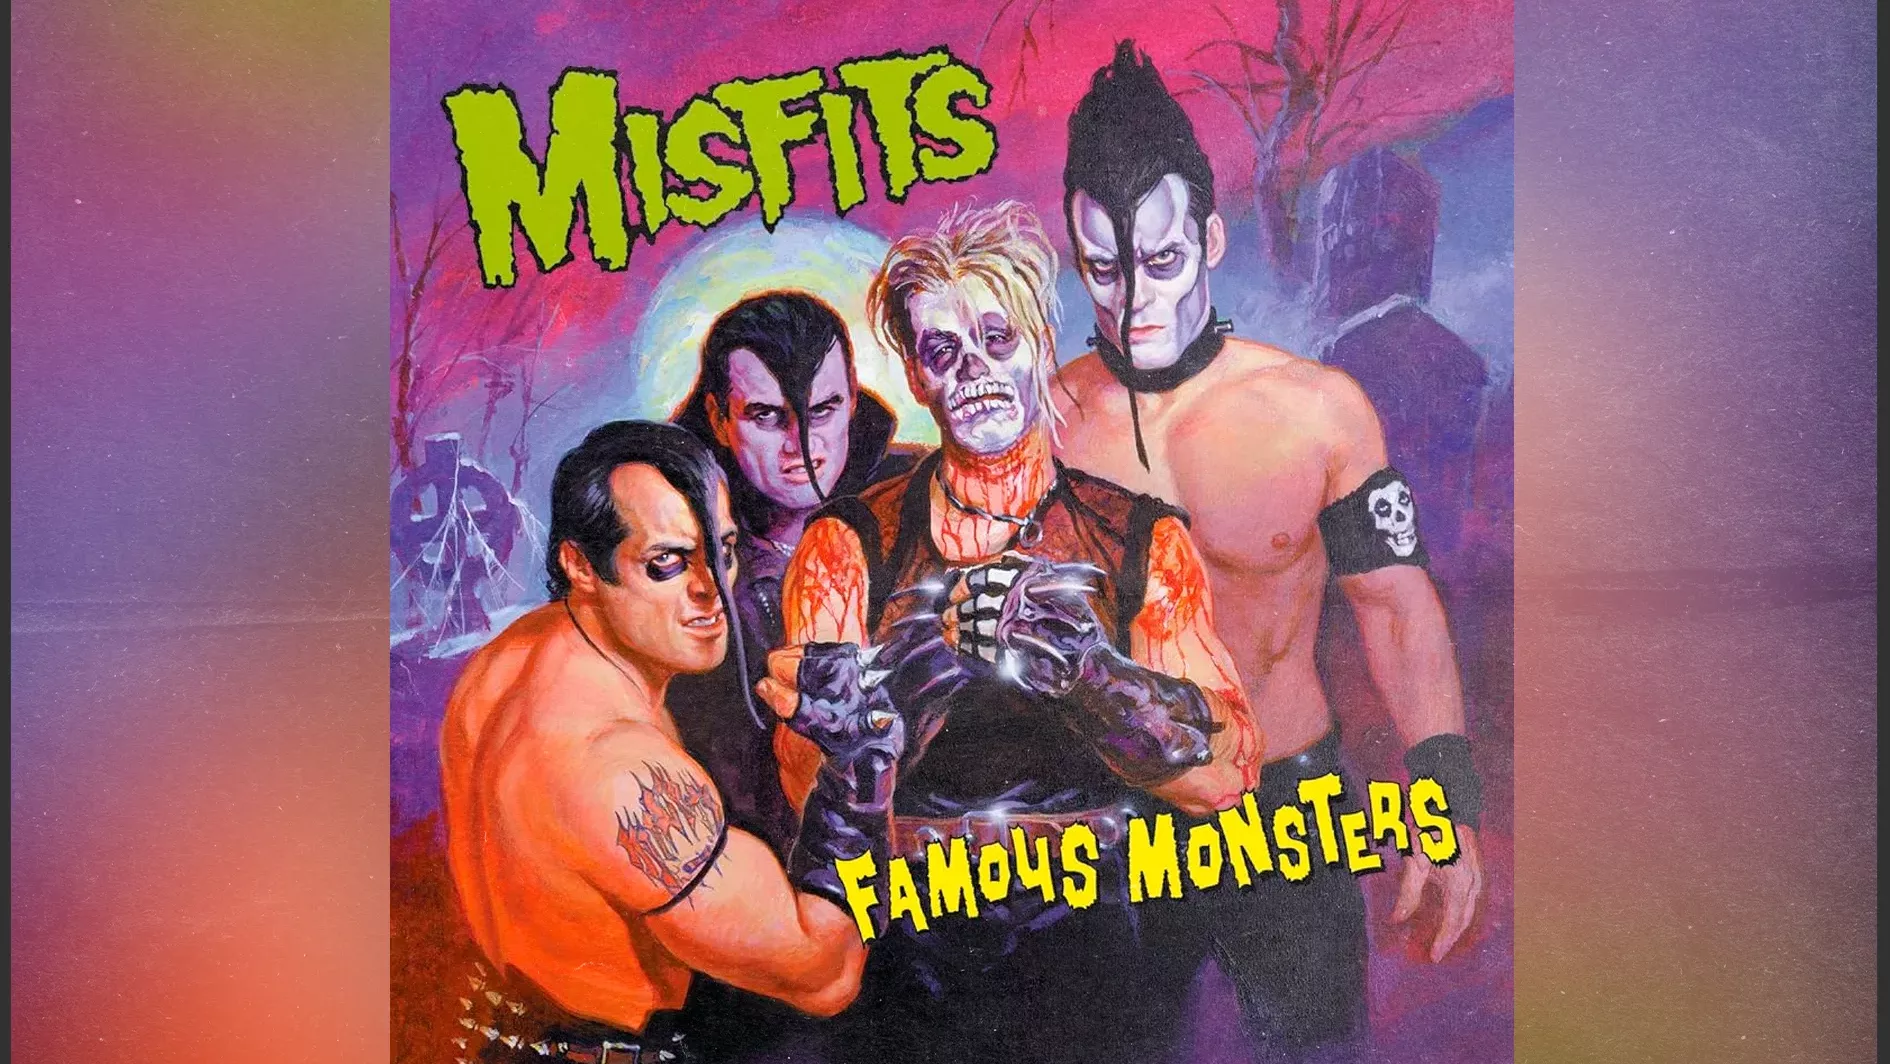 Clássico do Misfits, “Famous Monsters”, ganha nova edição no Brasil